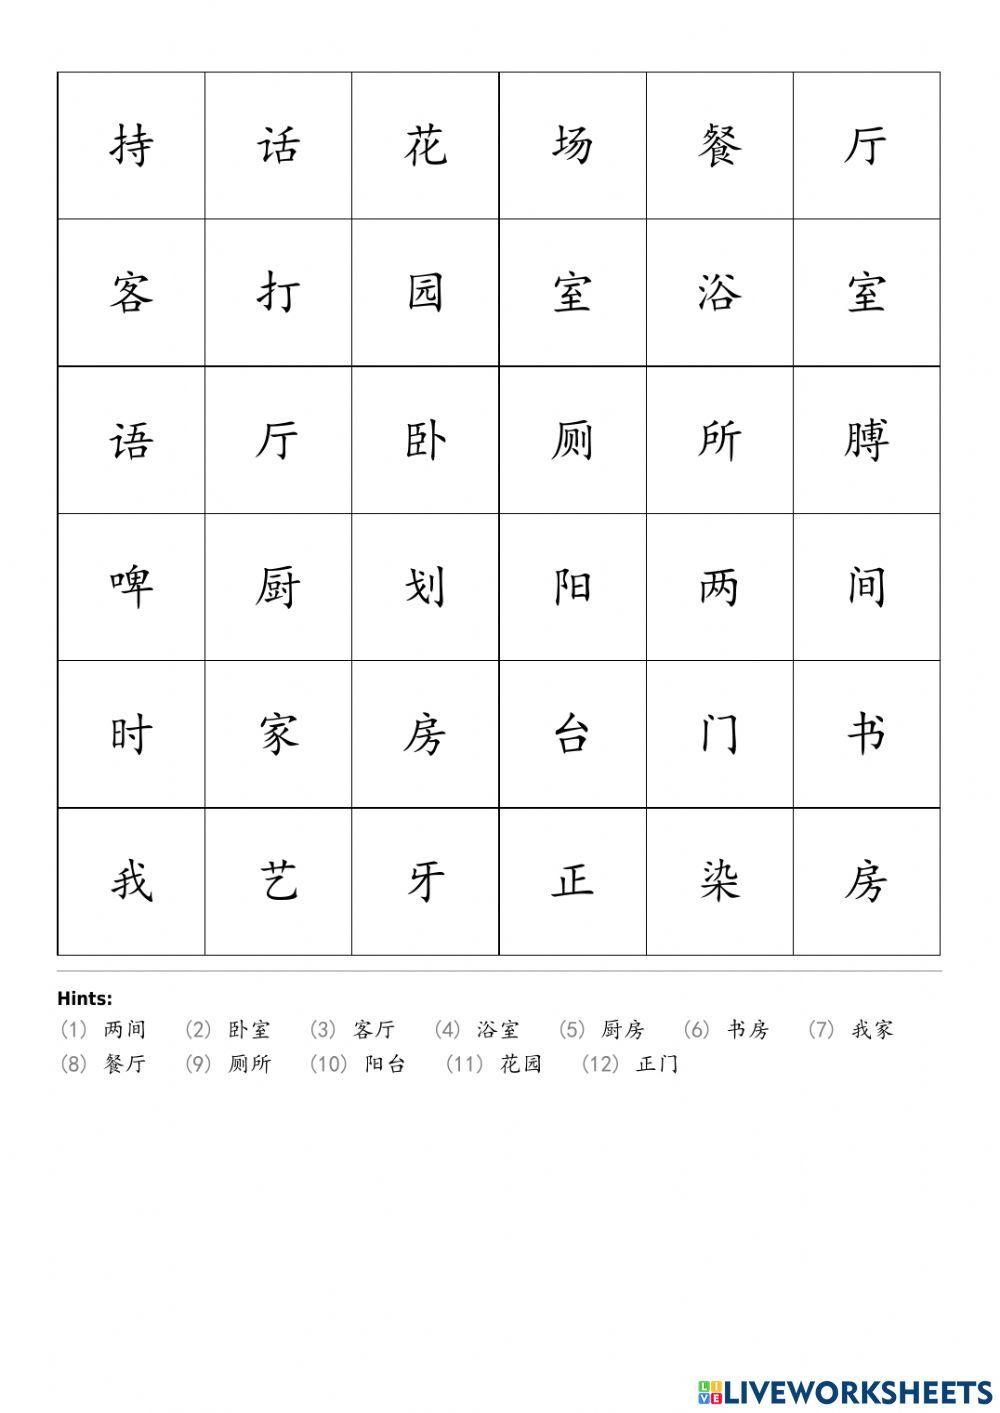 轻松学汉语 少儿版 15 课 我的家 wordsearch